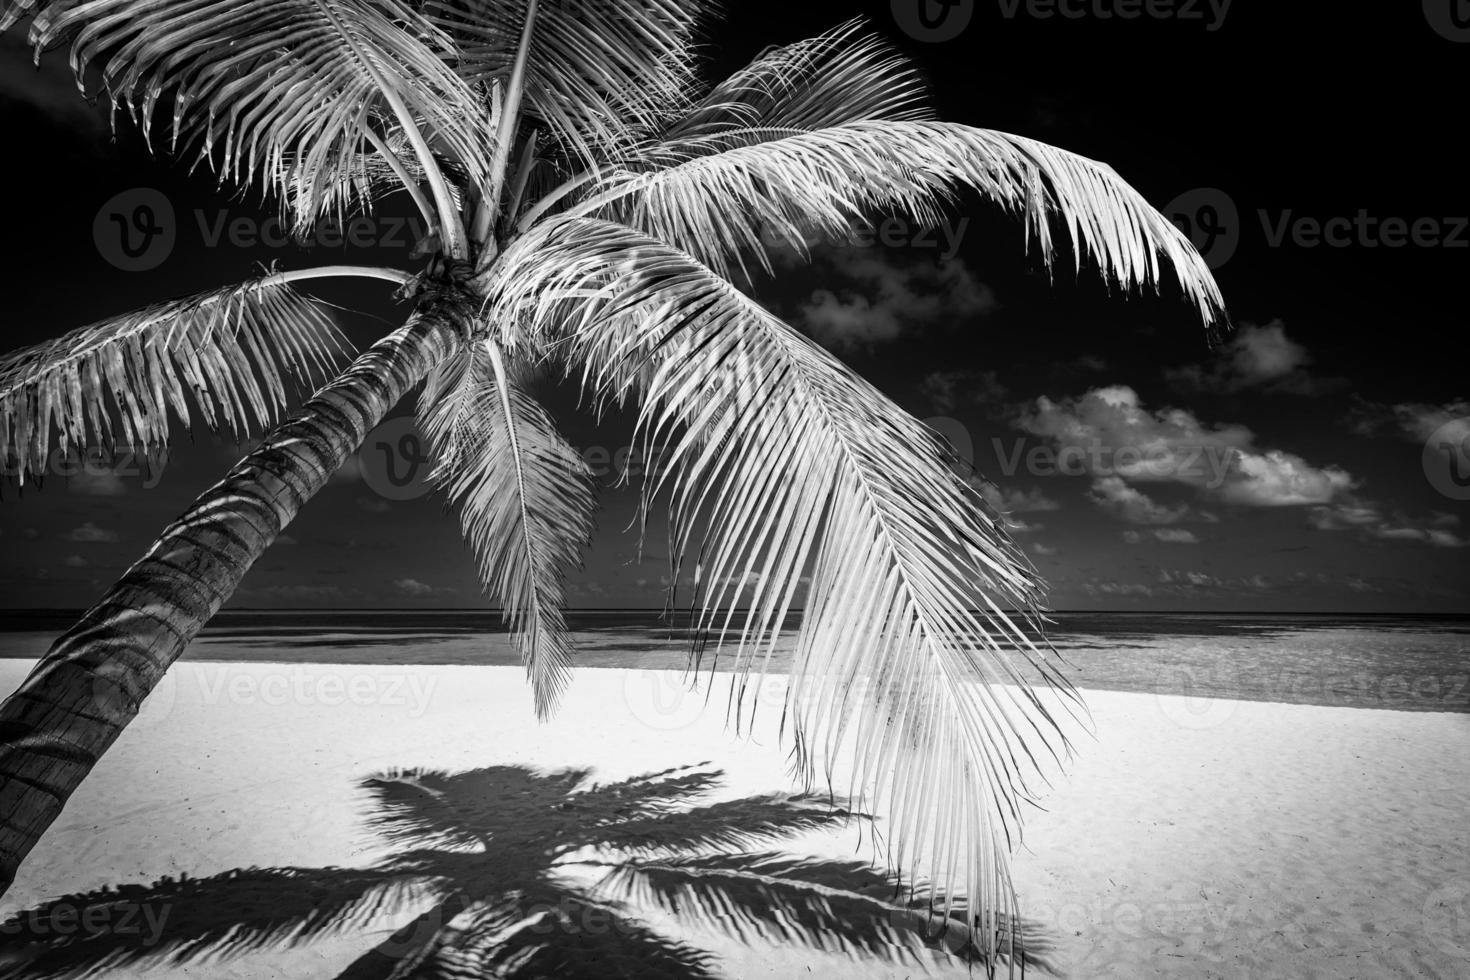 processo de natureza minimalista tranquilo em preto e branco. palmeiras de praia artística céu escuro, luz solar. padrão de fundo abstrato viagens monocromáticas. coqueiros verão escuro dramático meditação energia foto